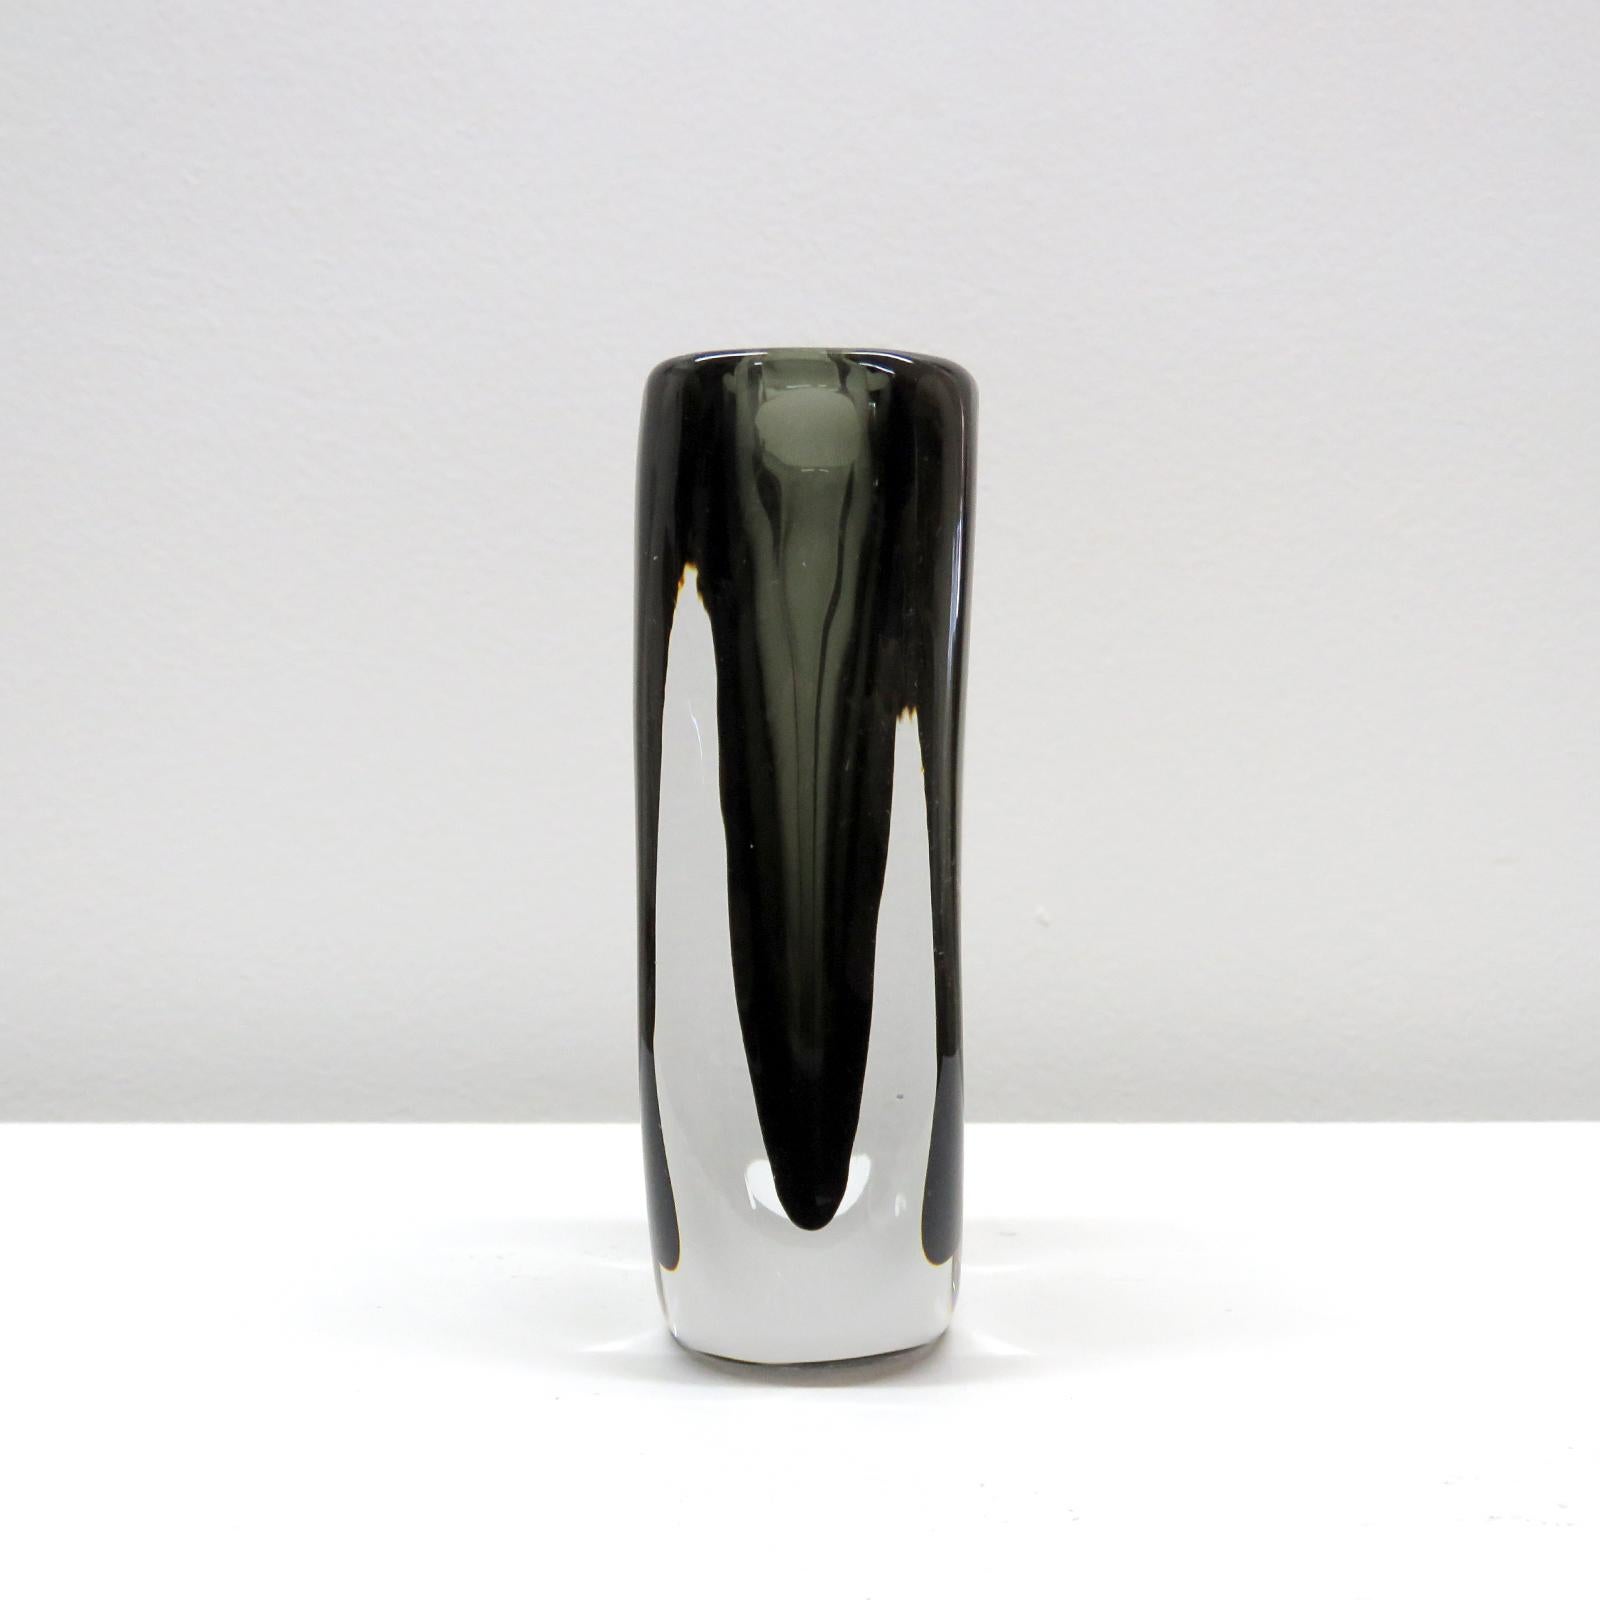 Hand-Crafted Nils Landberg Vase for Orrefors, 1965